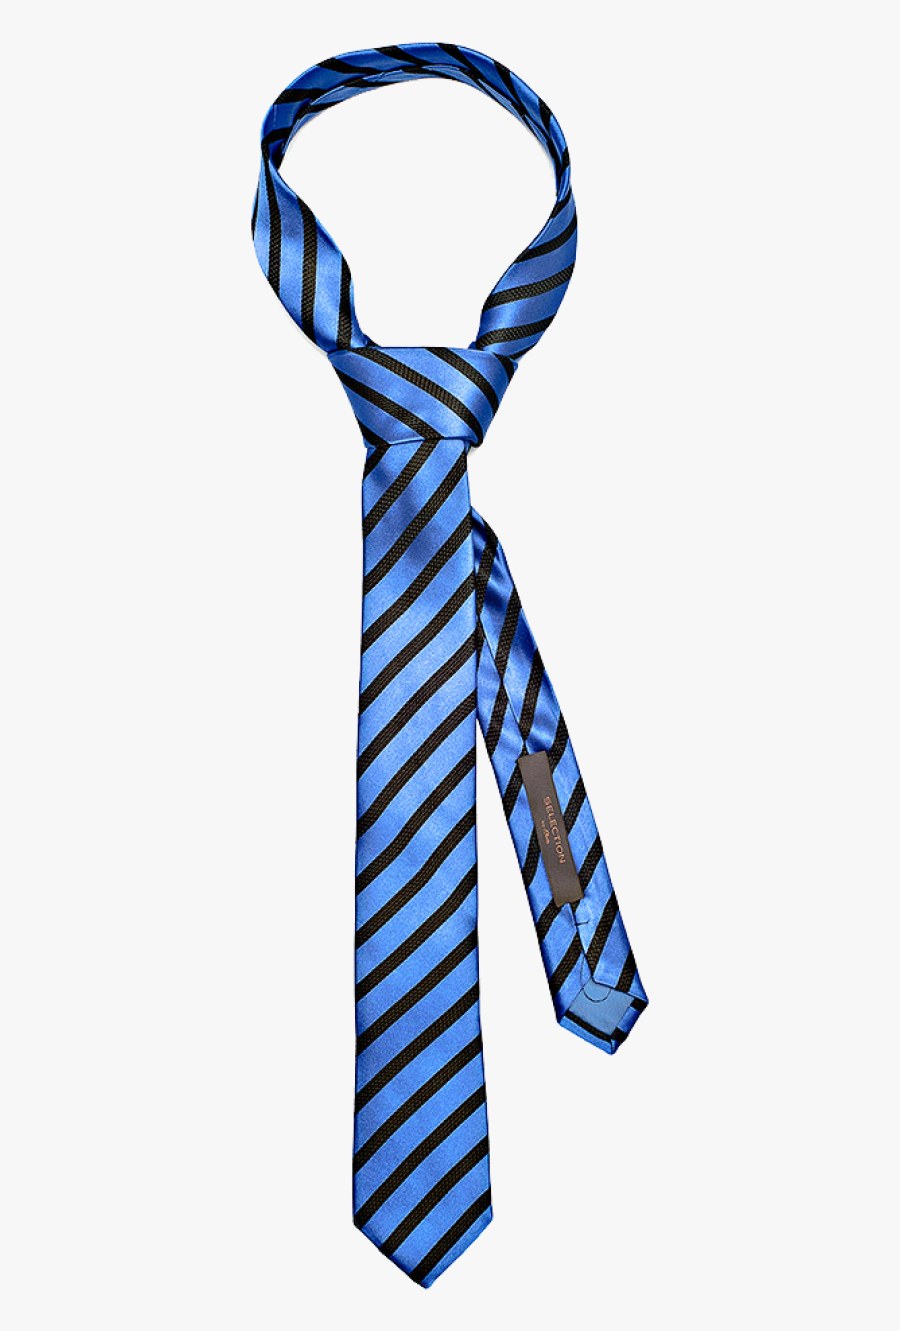 Blue Tie Transparent Background, Transparent Clipart